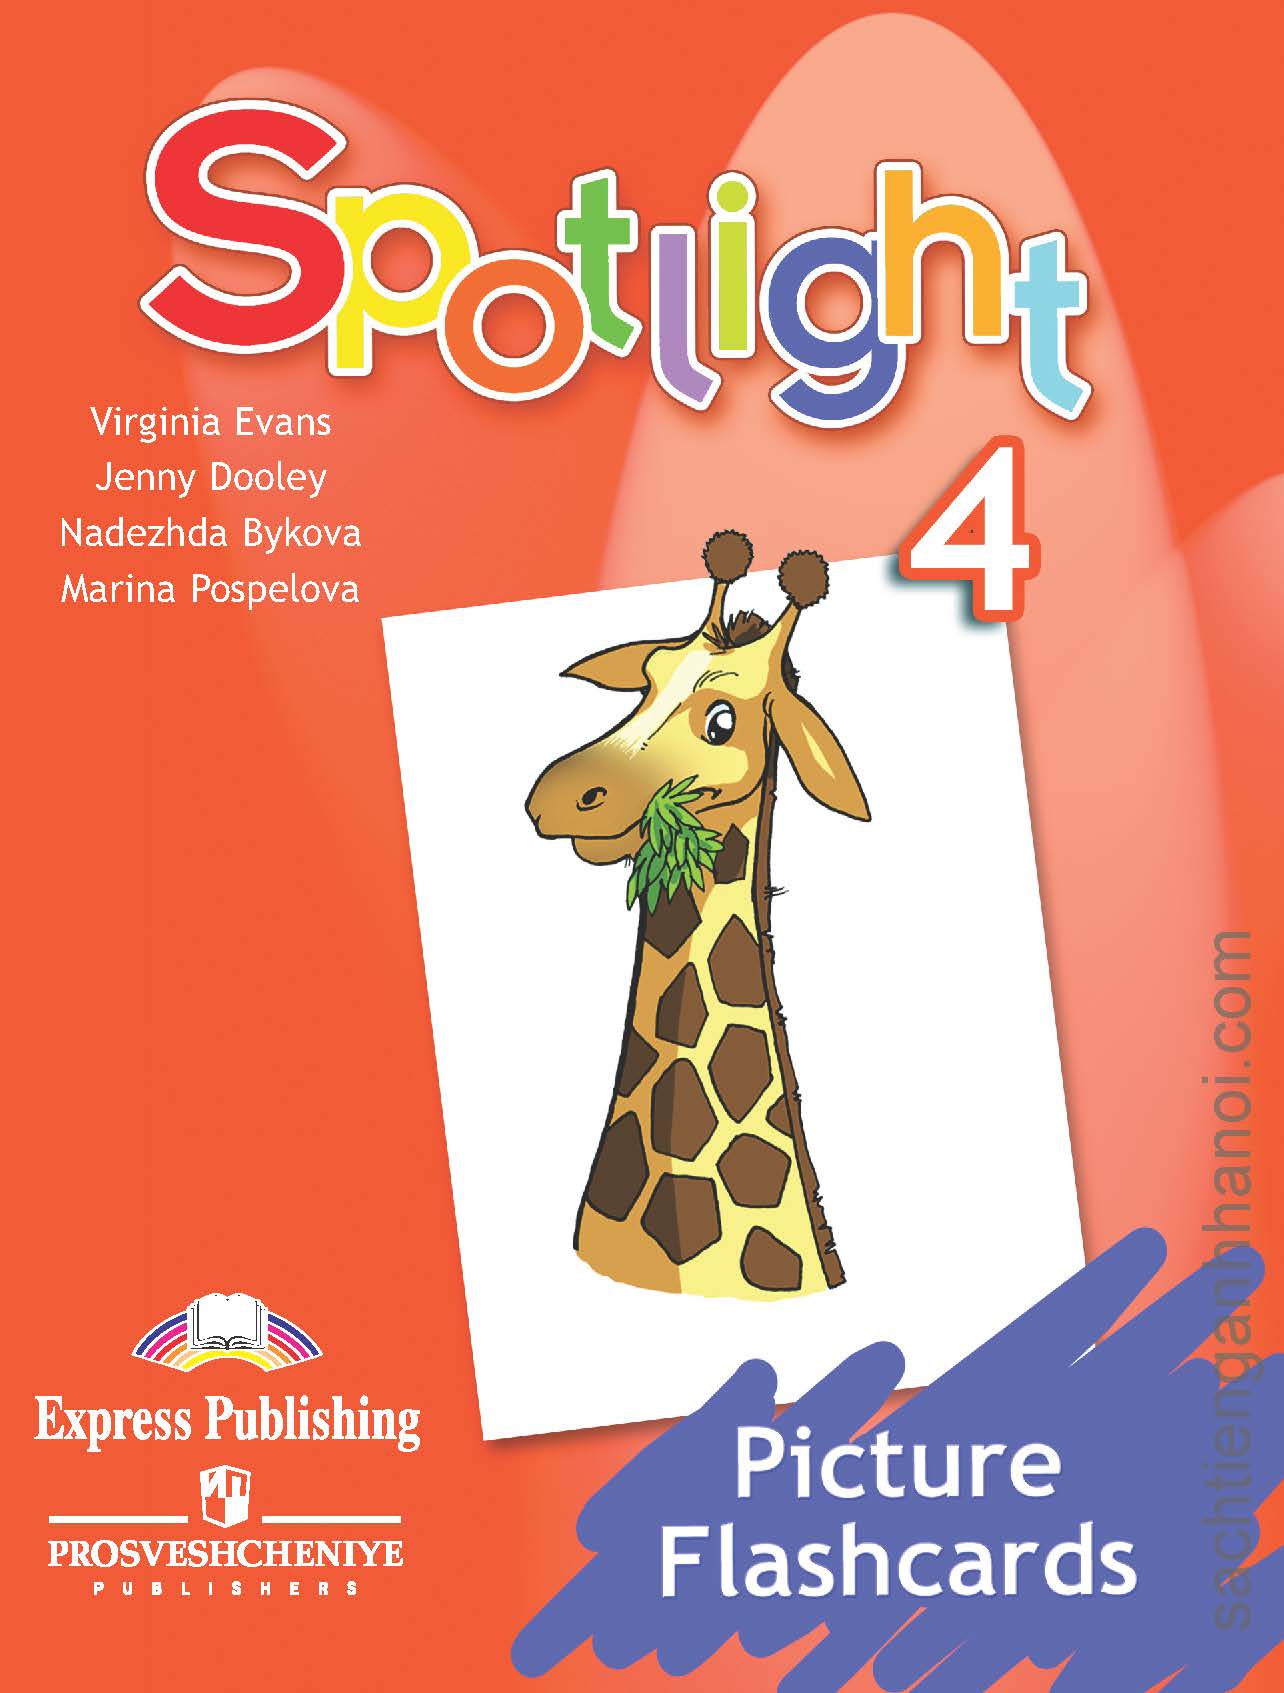 Спотлайт 3 класс pdf. Учебник английского Spotlight 4. Spotlight начальная школа. Английский язык в фокусе. Раздаточный материал на английском.